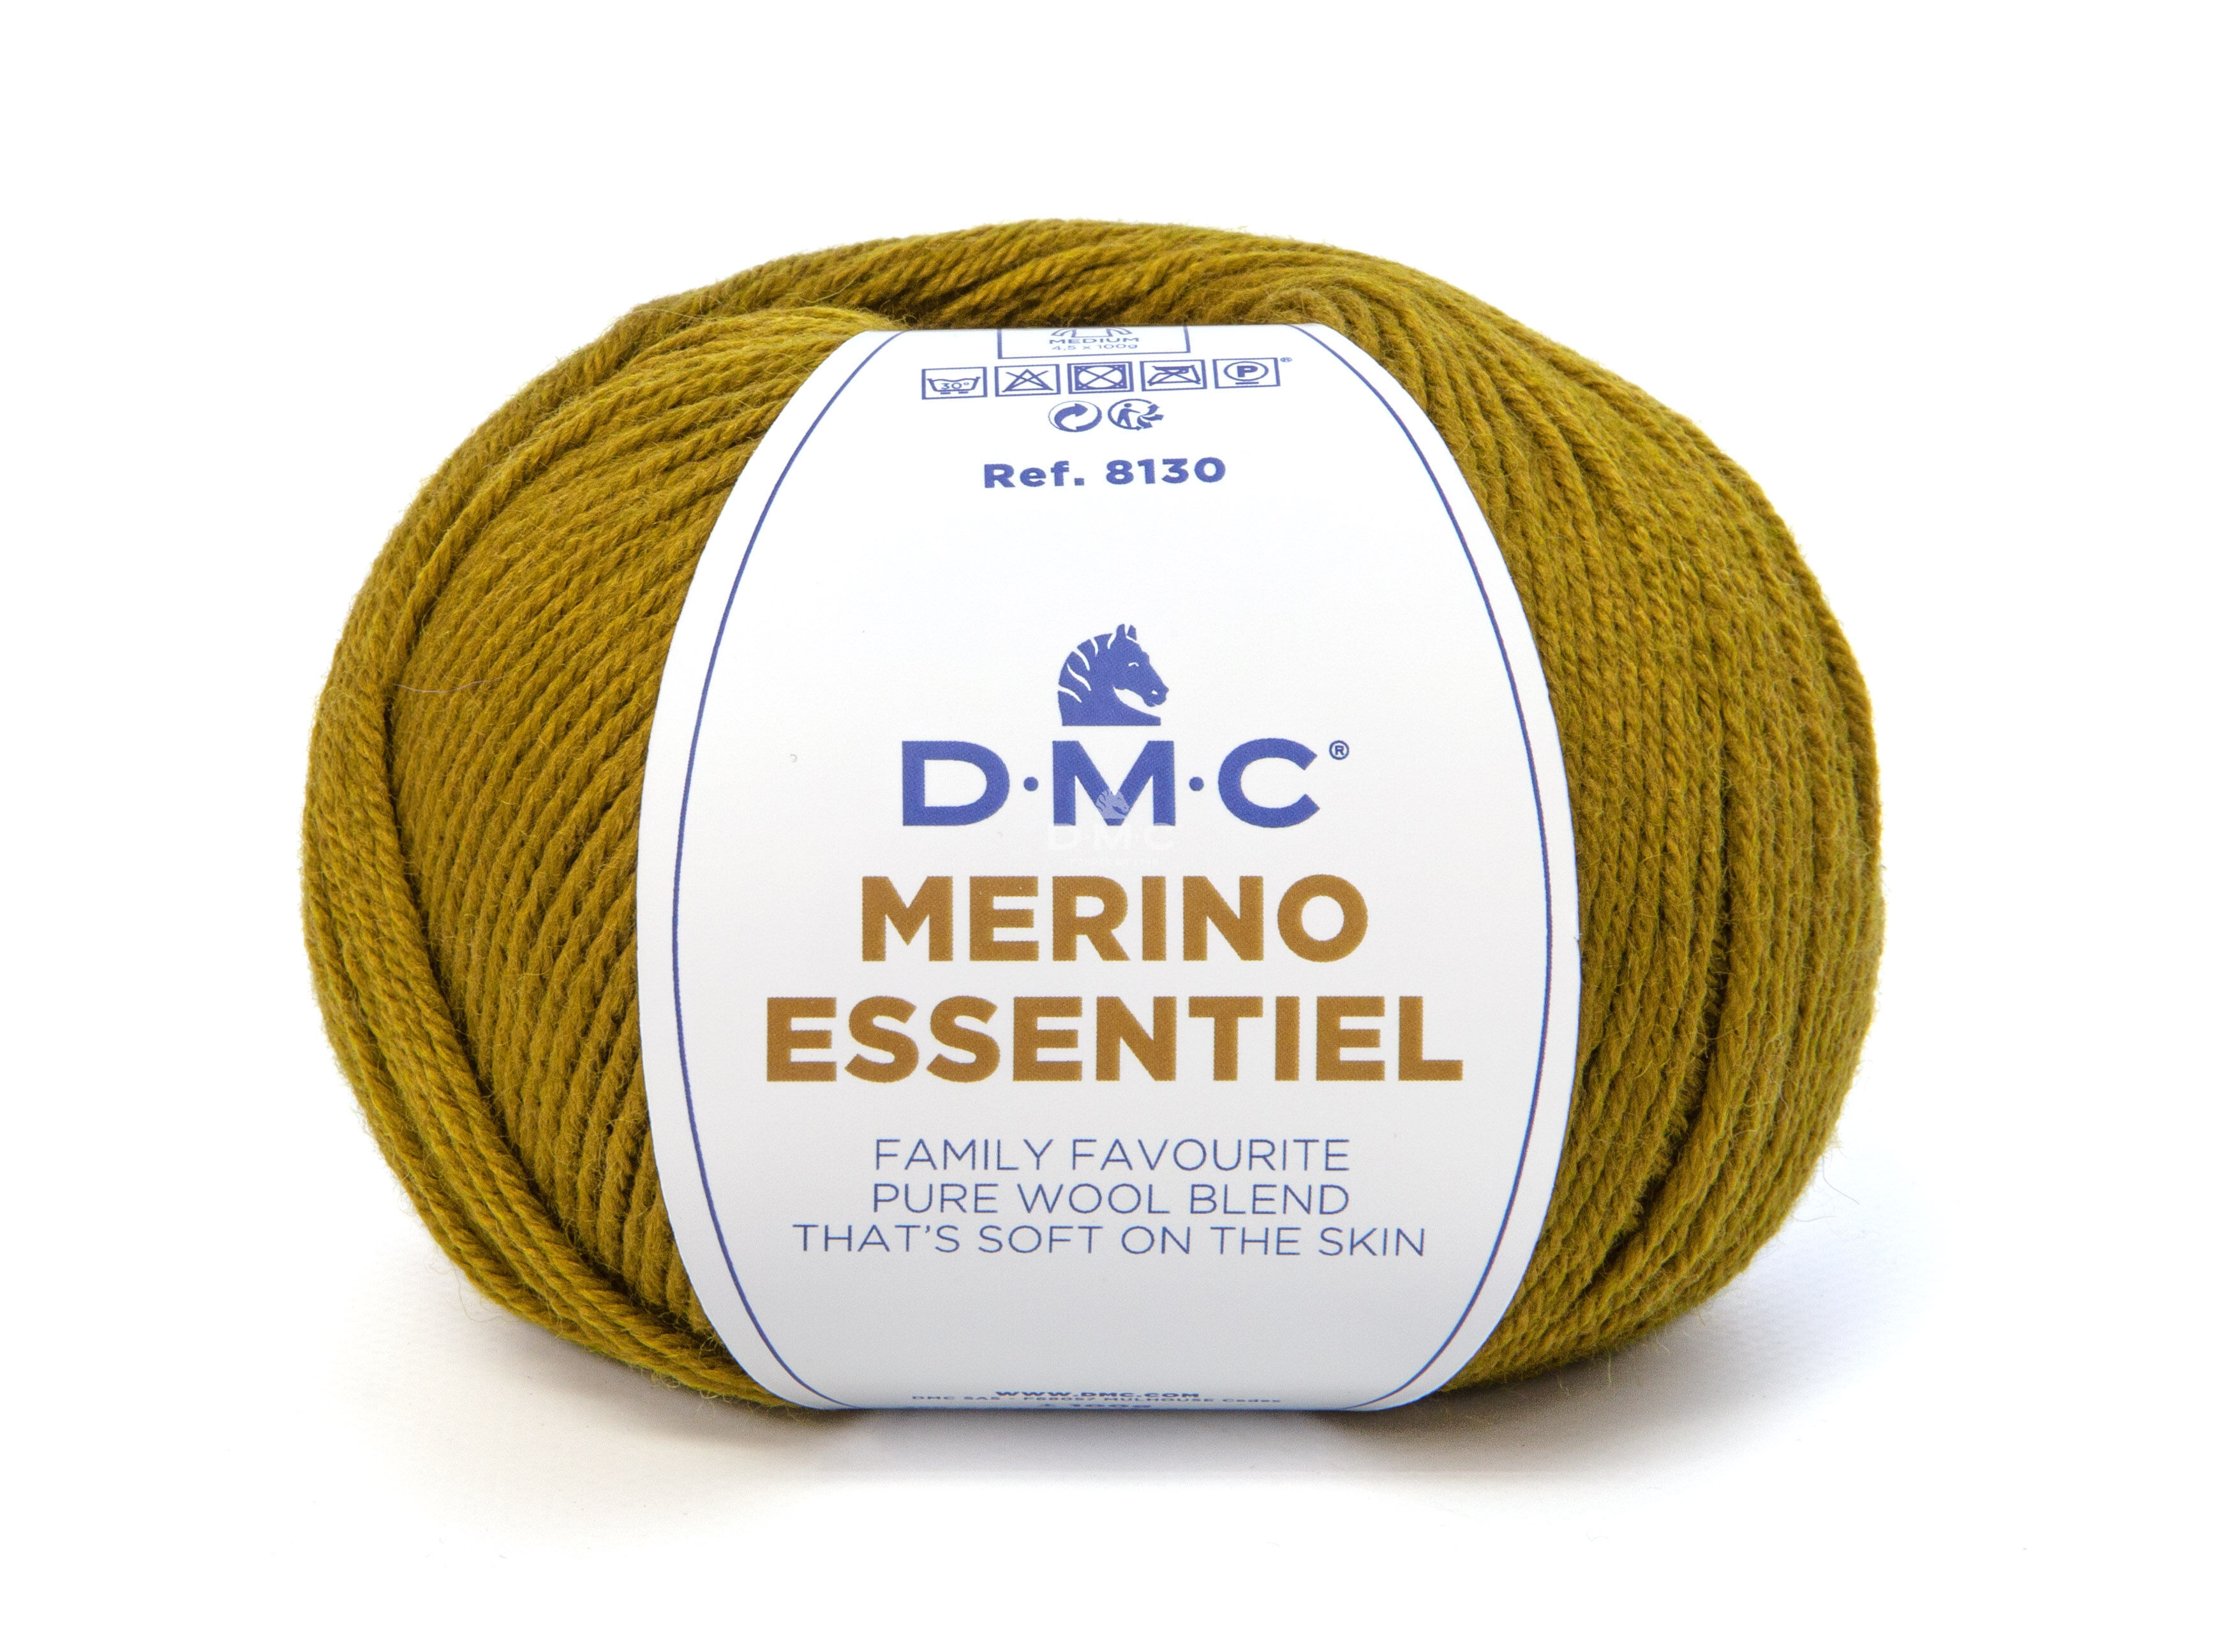 DMC Merino Essential 4 - 869 oliva